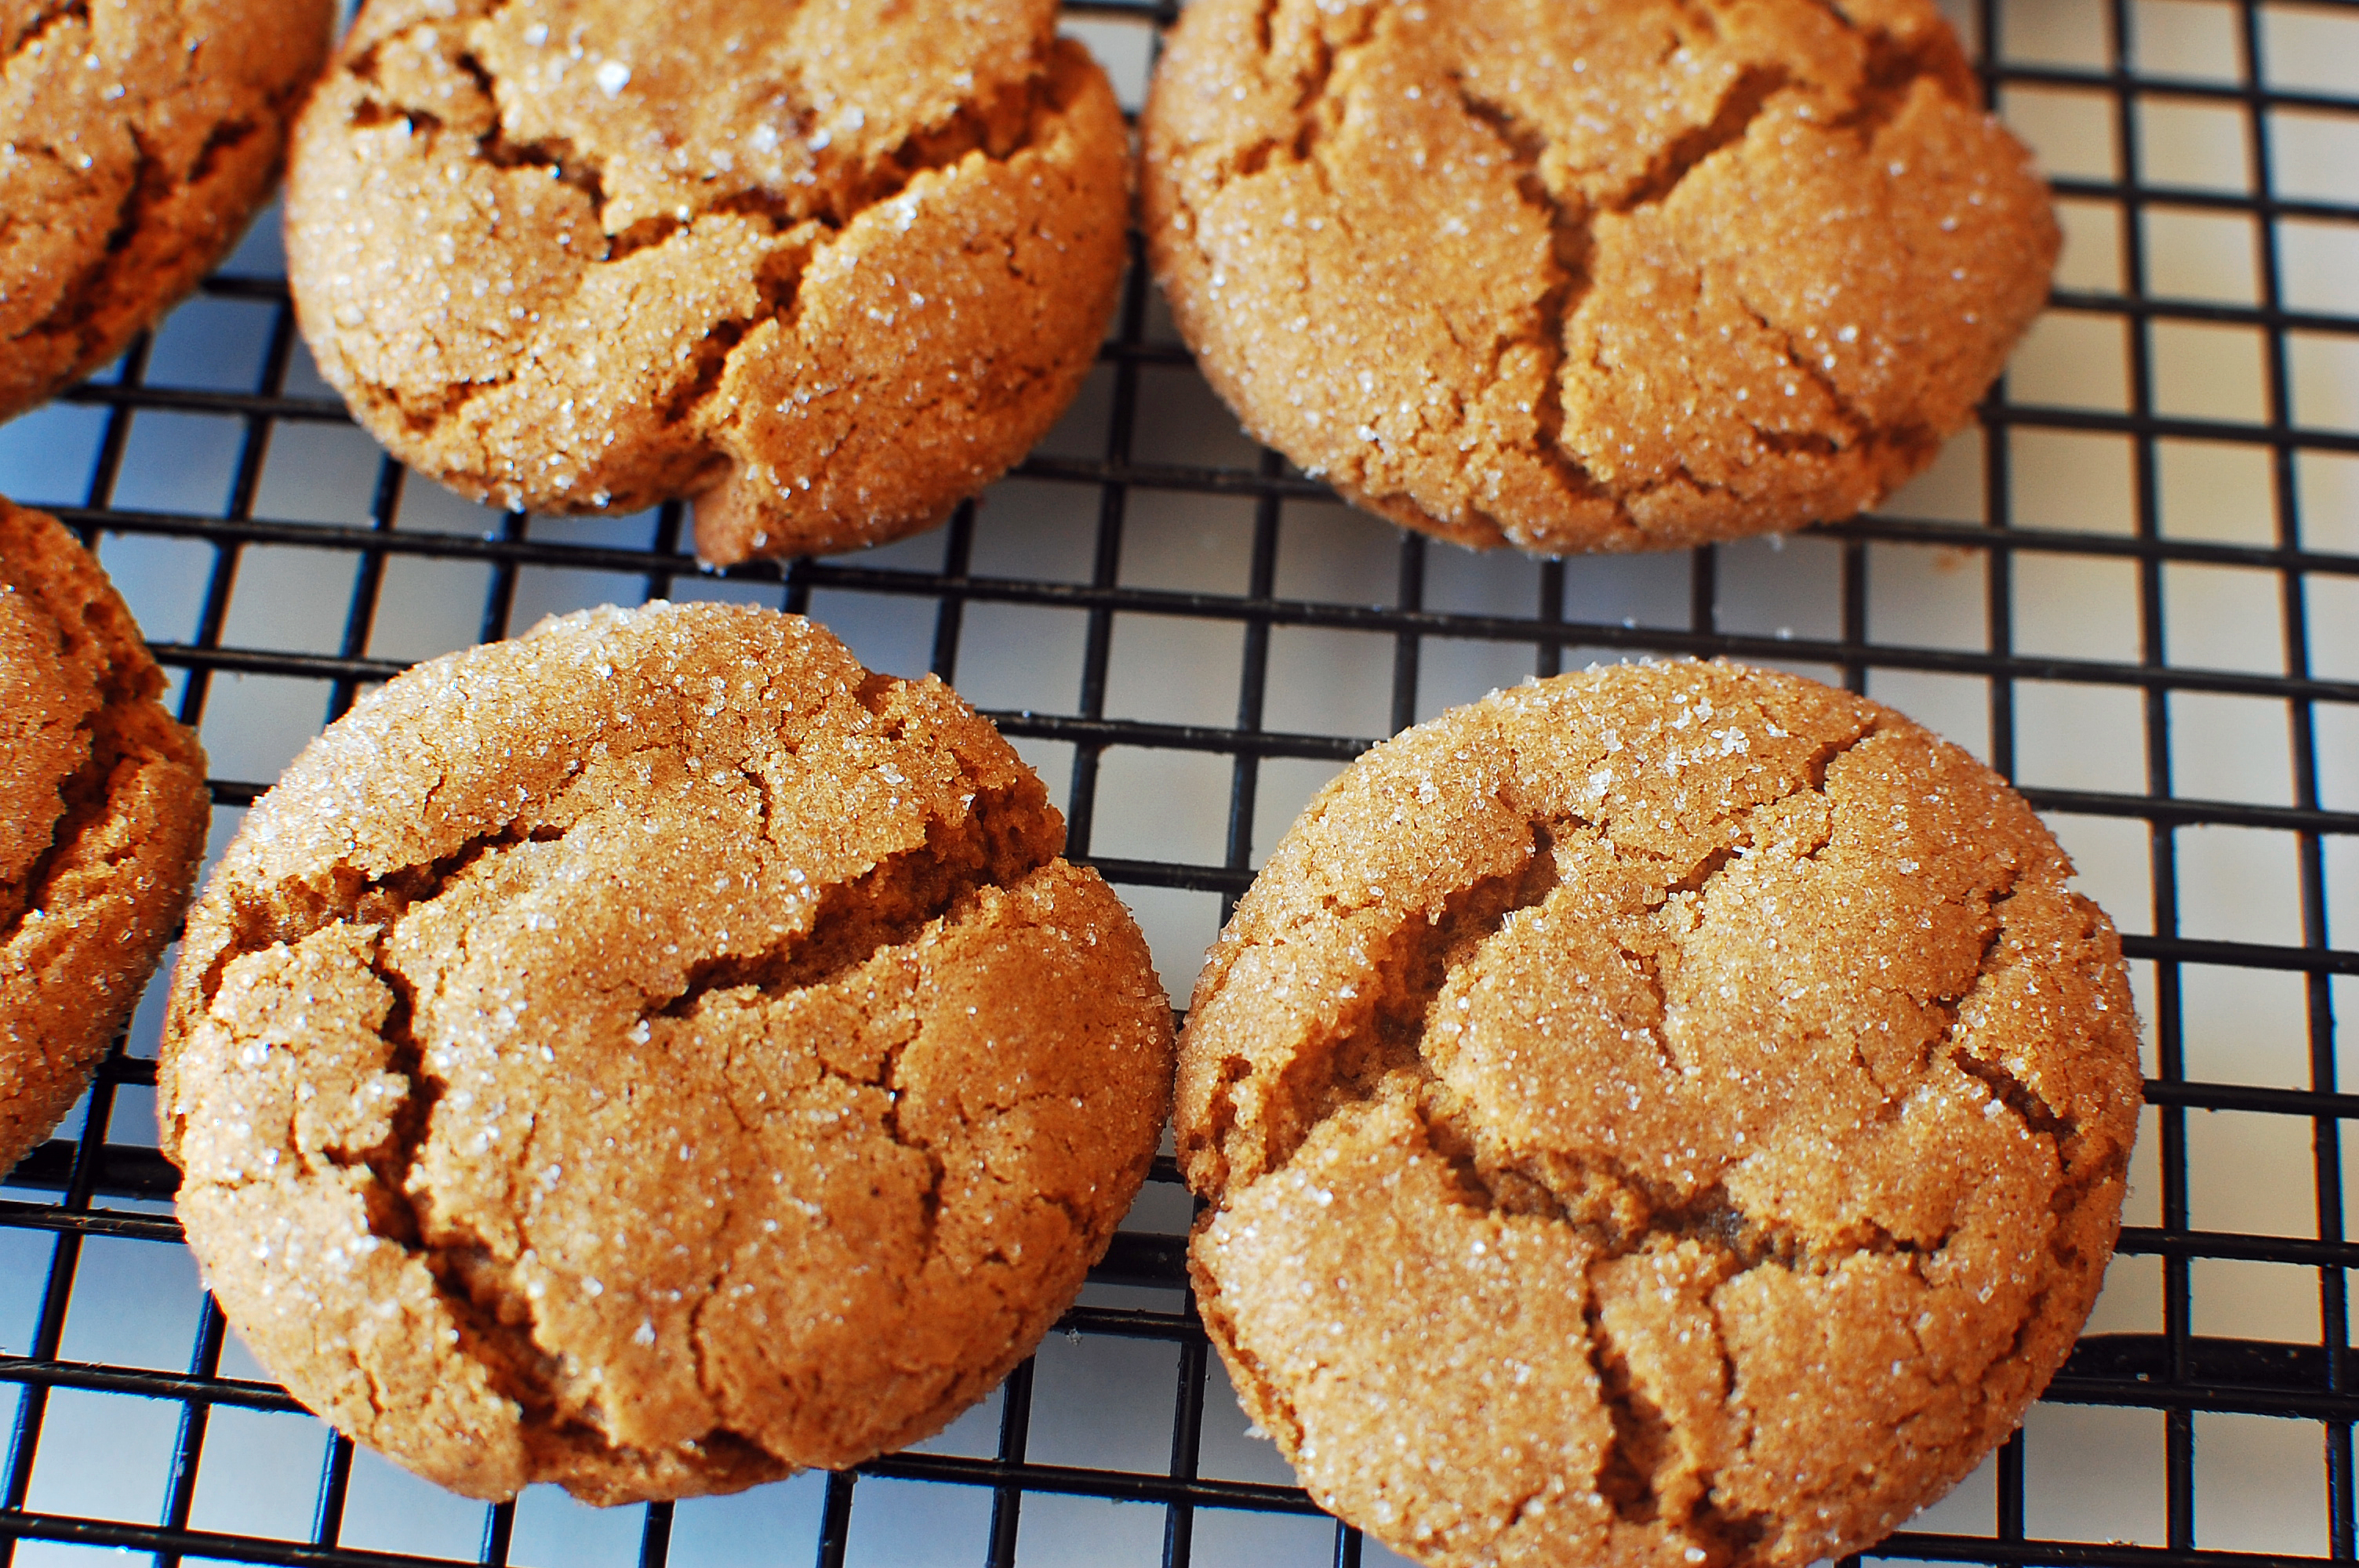 allergens in breaktime ginger cookies